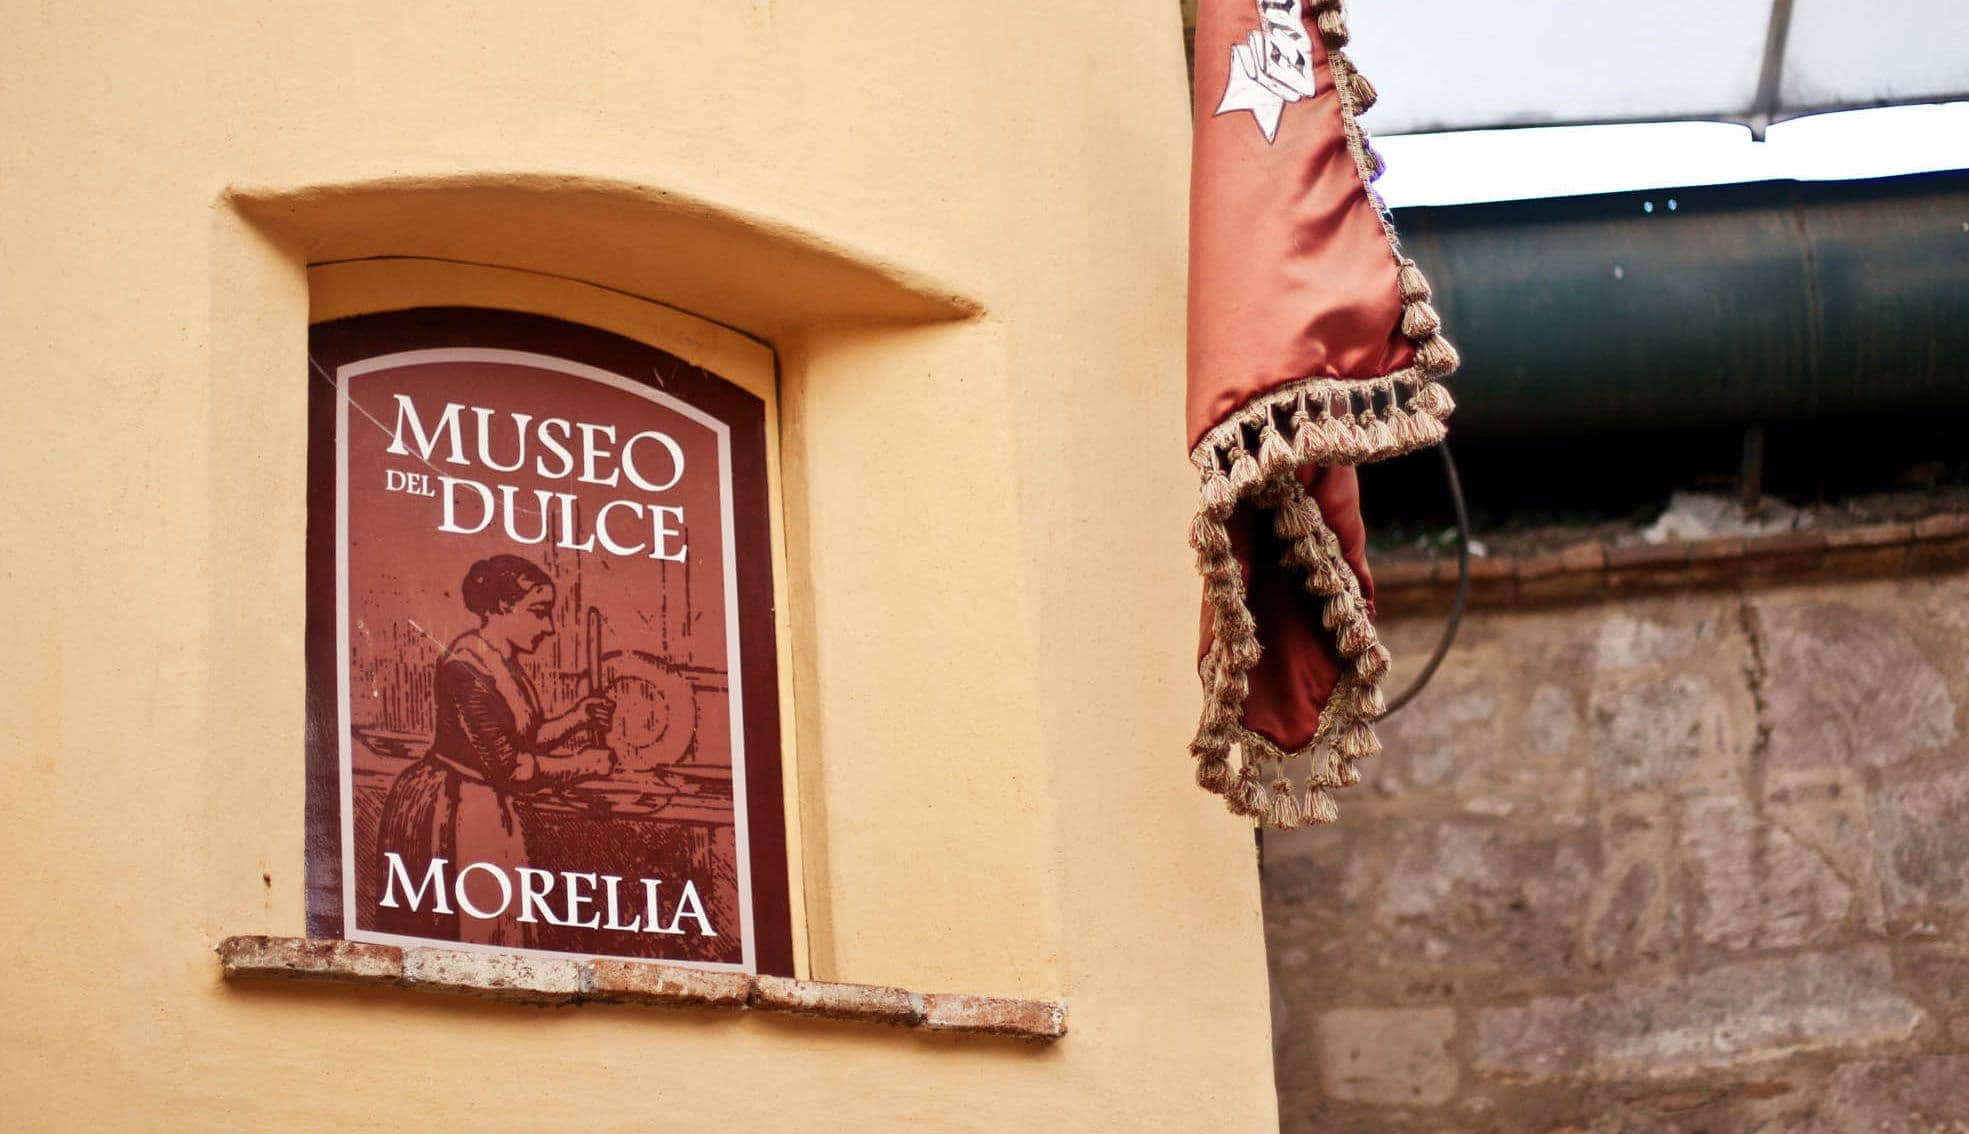 Museo del Dulce, Foto por: Flickr/Creative Commons/Festival Ambulante/Via/https://flic.kr/p/mAbThv